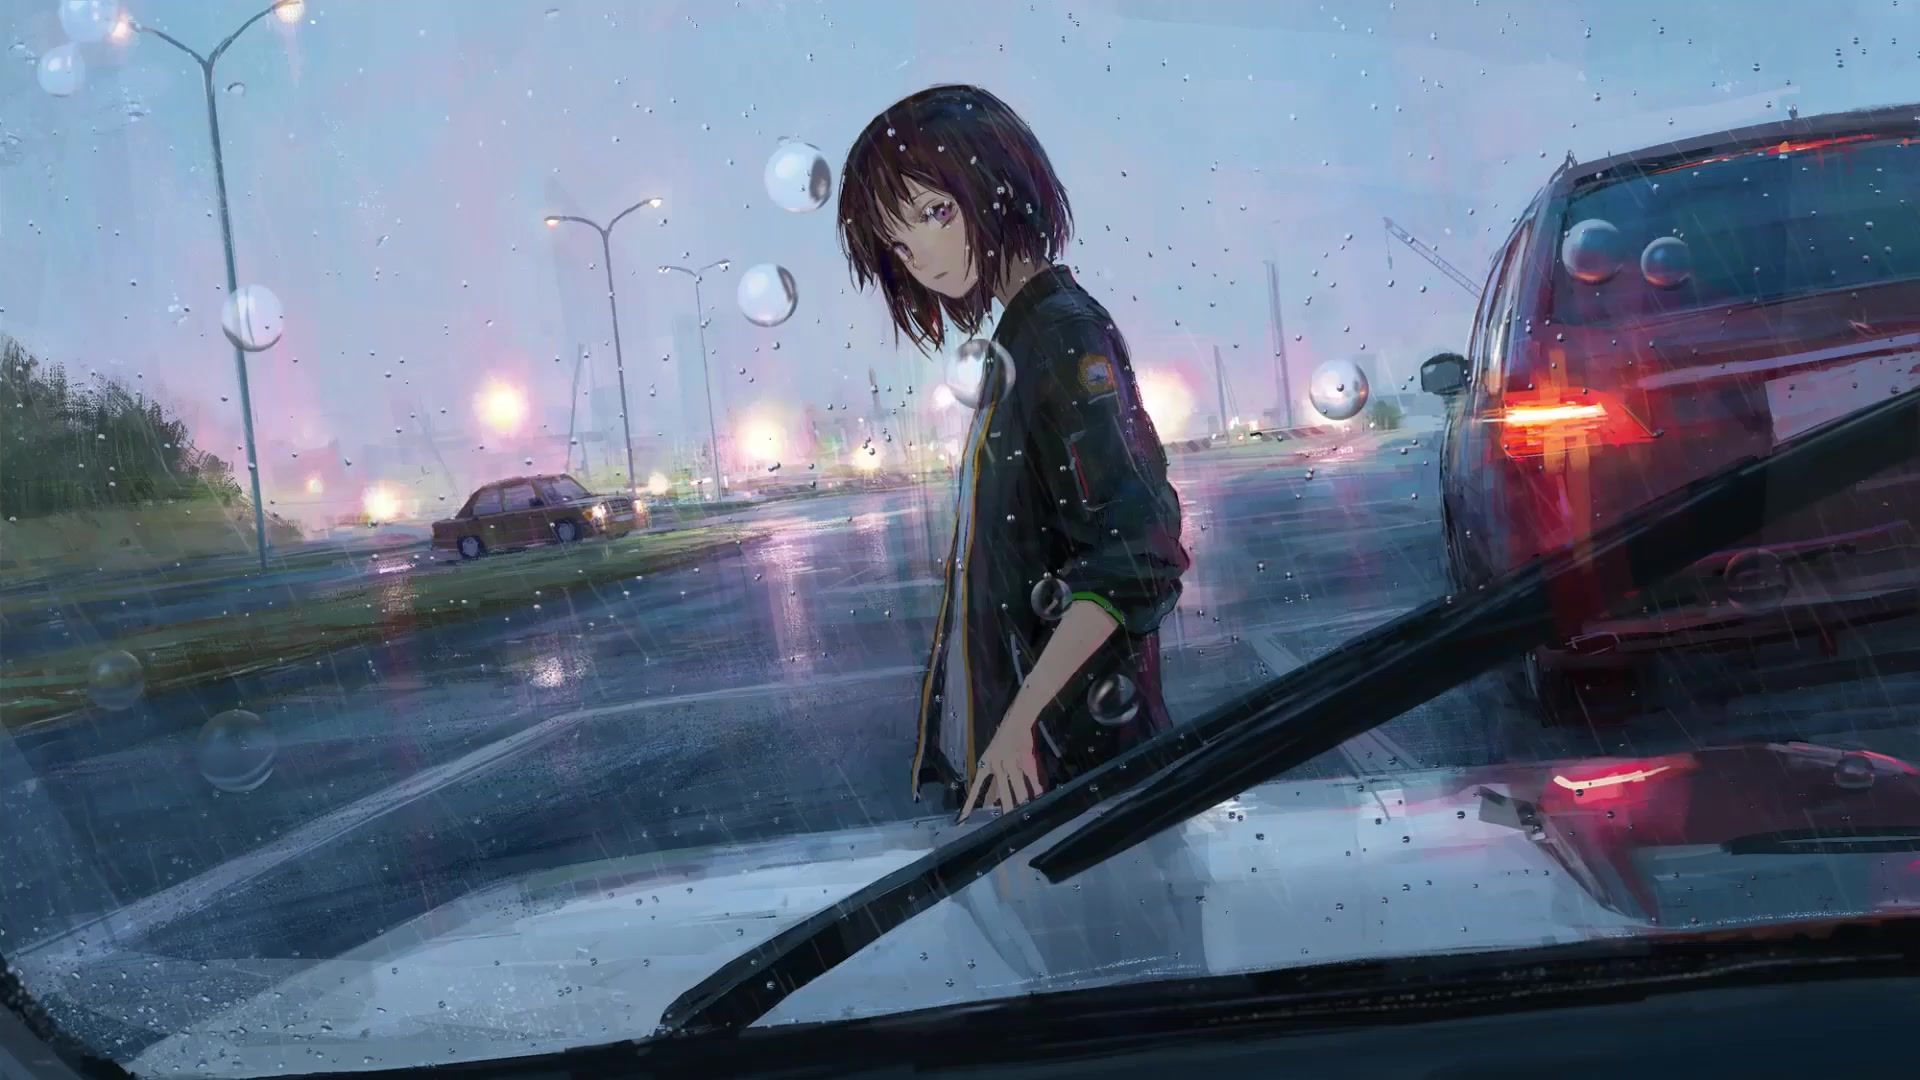 Hãy cùng tận hưởng hình ảnh về nhân vật nữ mang kiểu tóc bob ngắn đáng yêu trong mưa của bộ ảnh Rainfall Girl Anime Live Wallpaper. Hình nền động nhẹ nhàng sẽ làm bạn cảm thấy thư giãn và yên bình dù cho mưa có dồn dập.